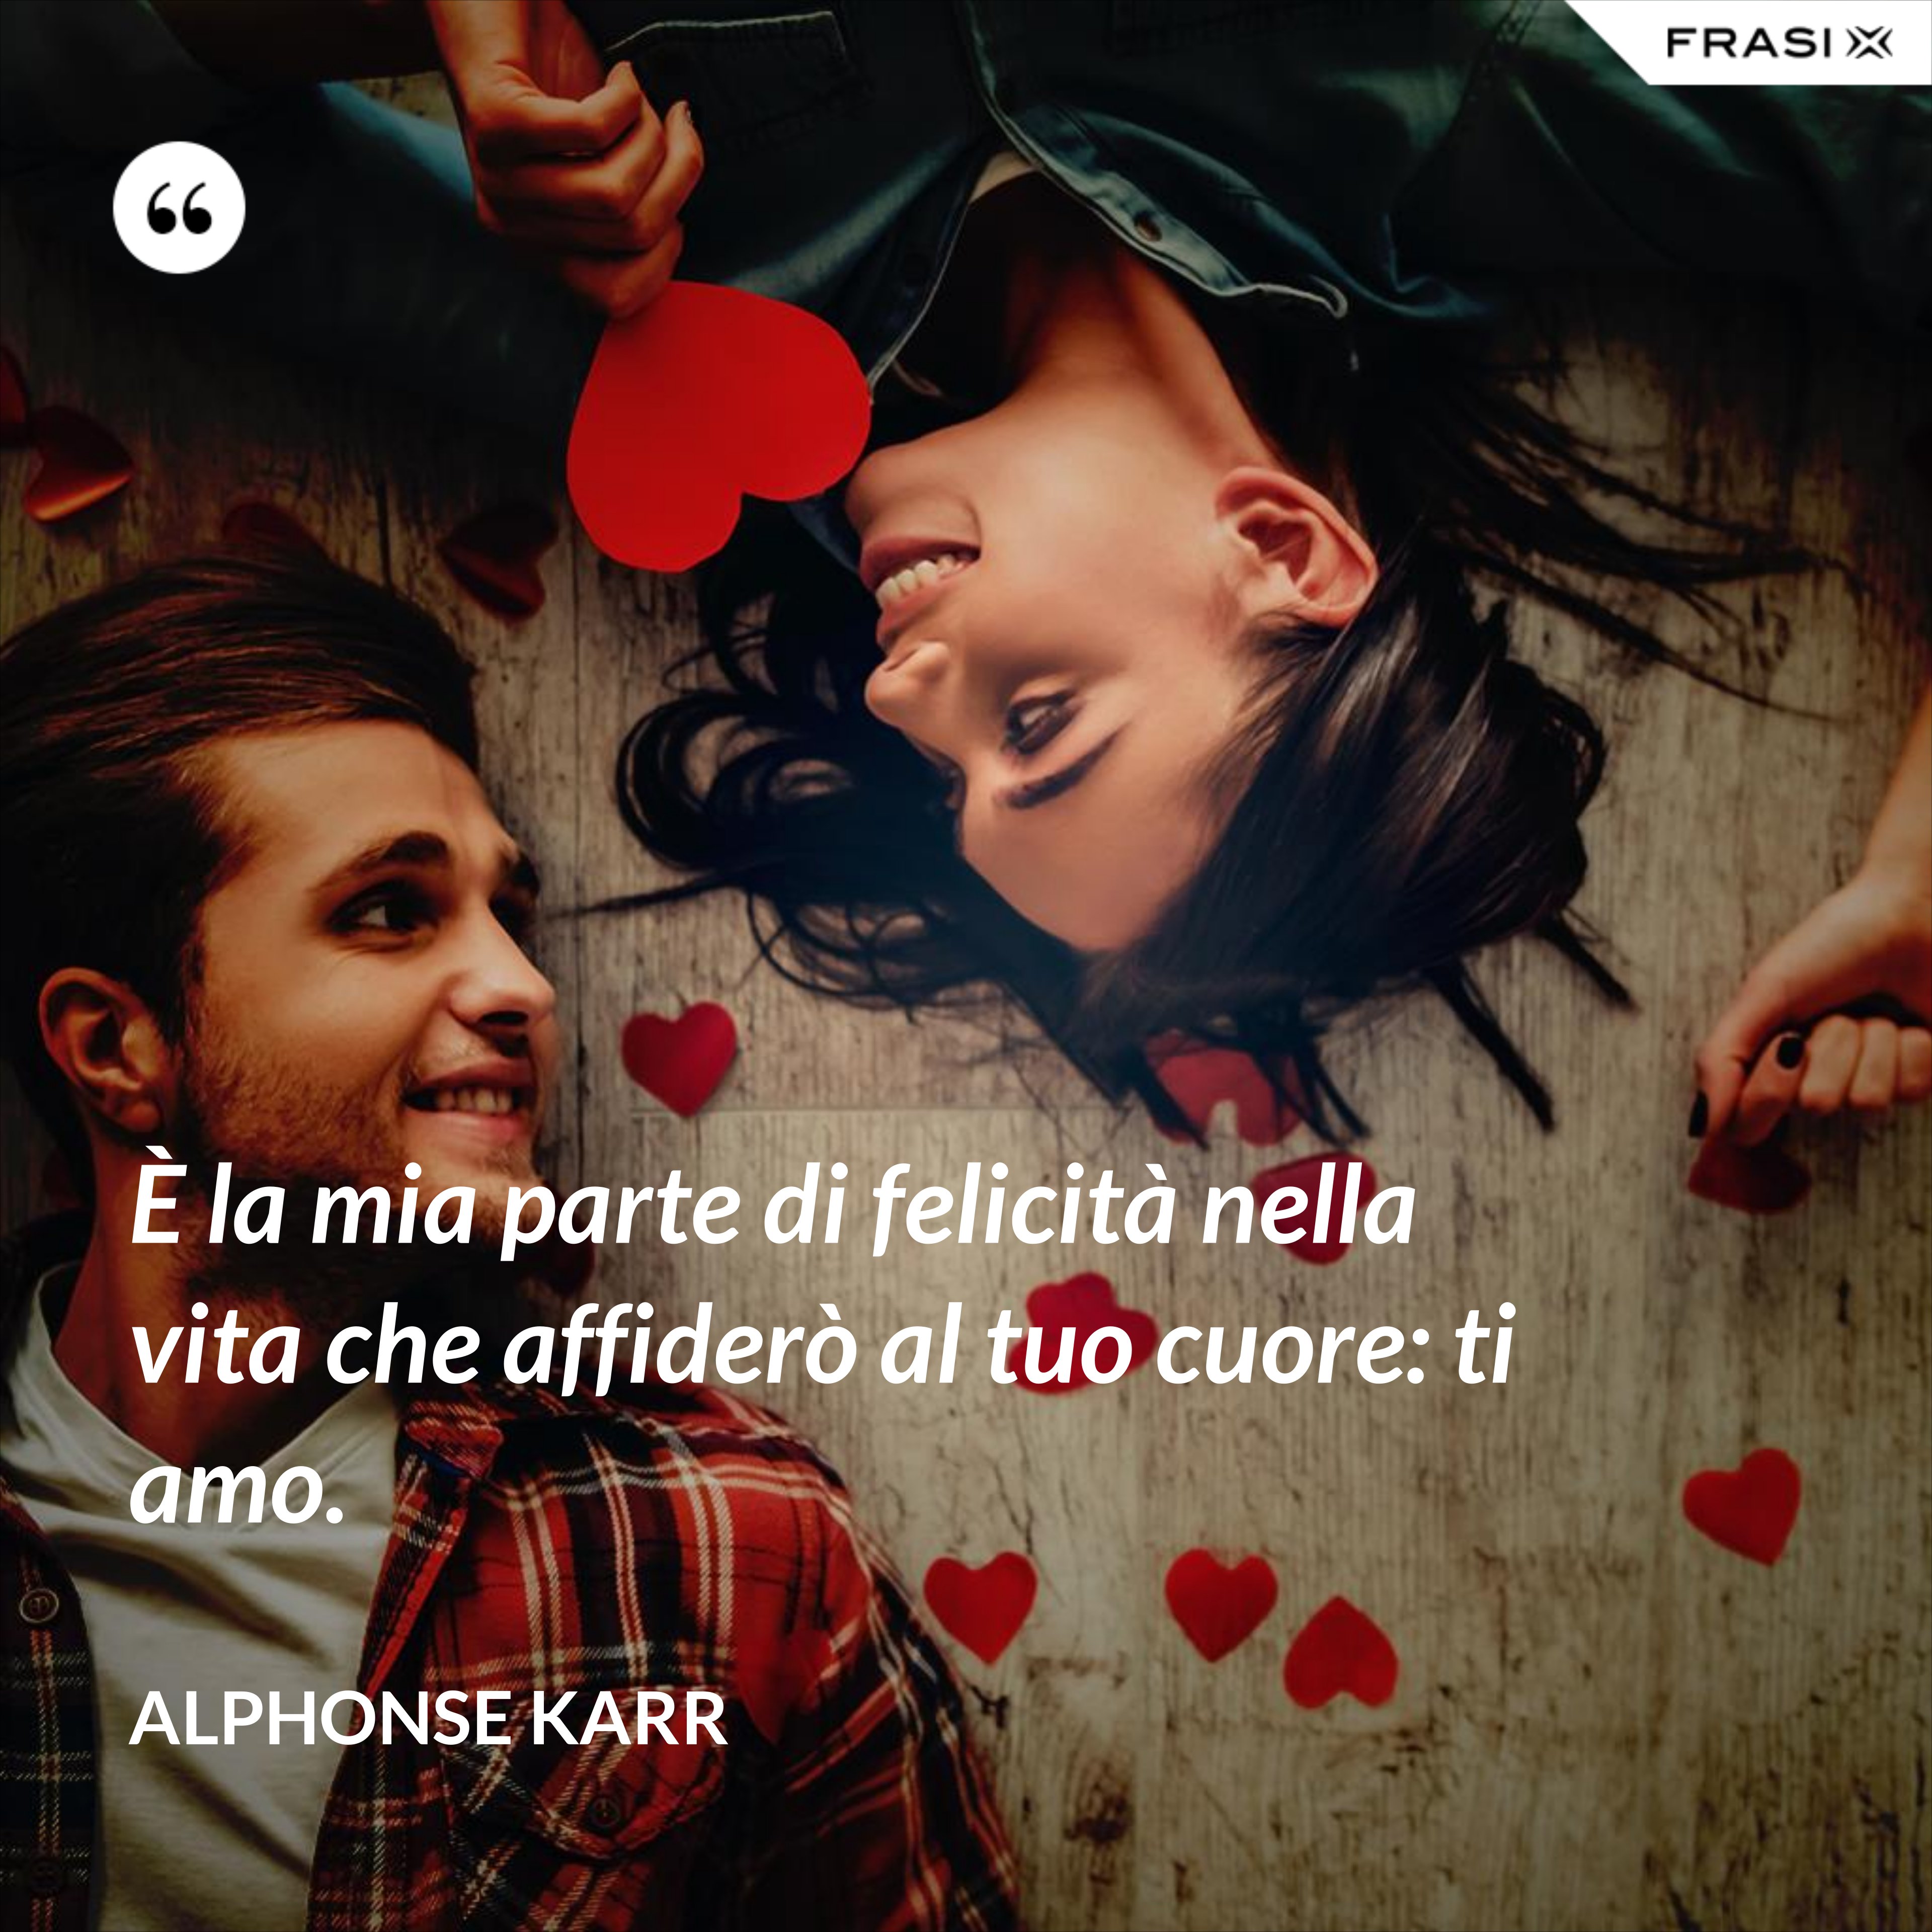 È la mia parte di felicità nella vita che affiderò al tuo cuore: ti amo. - Alphonse Karr